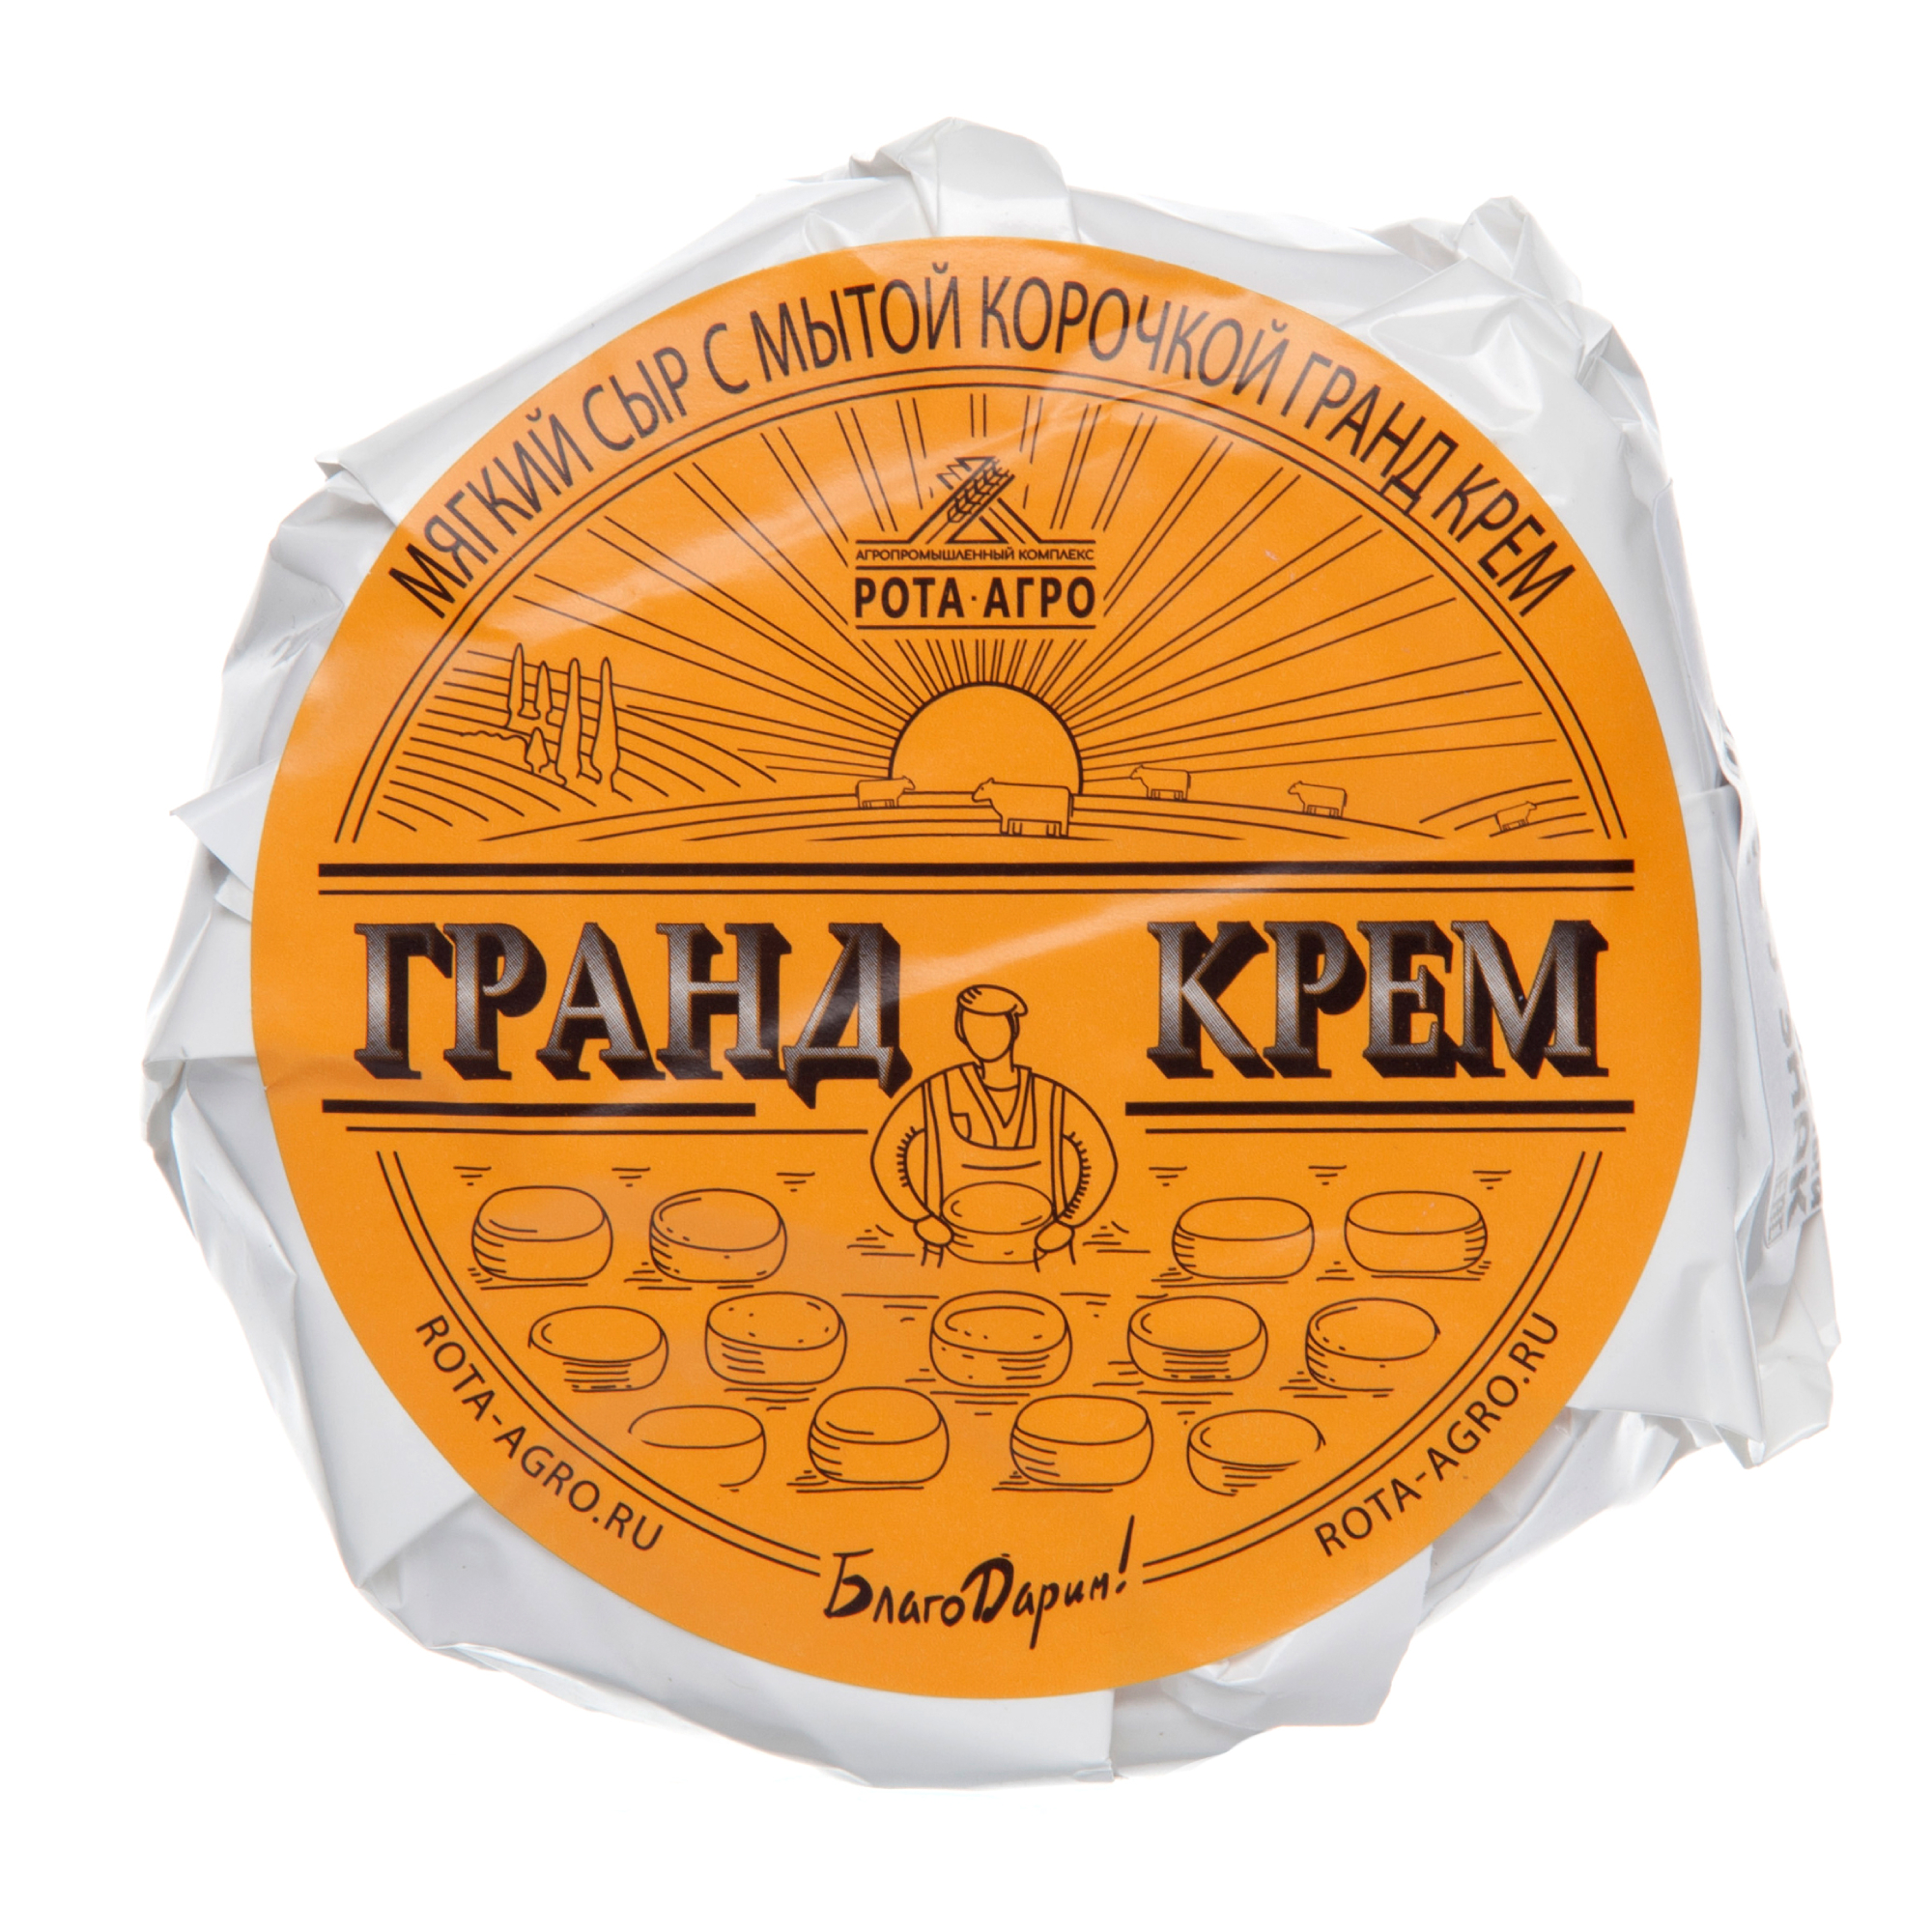 Сыр мягкий РОТА-АГРО Гранд крем с мытой корочкой, кг